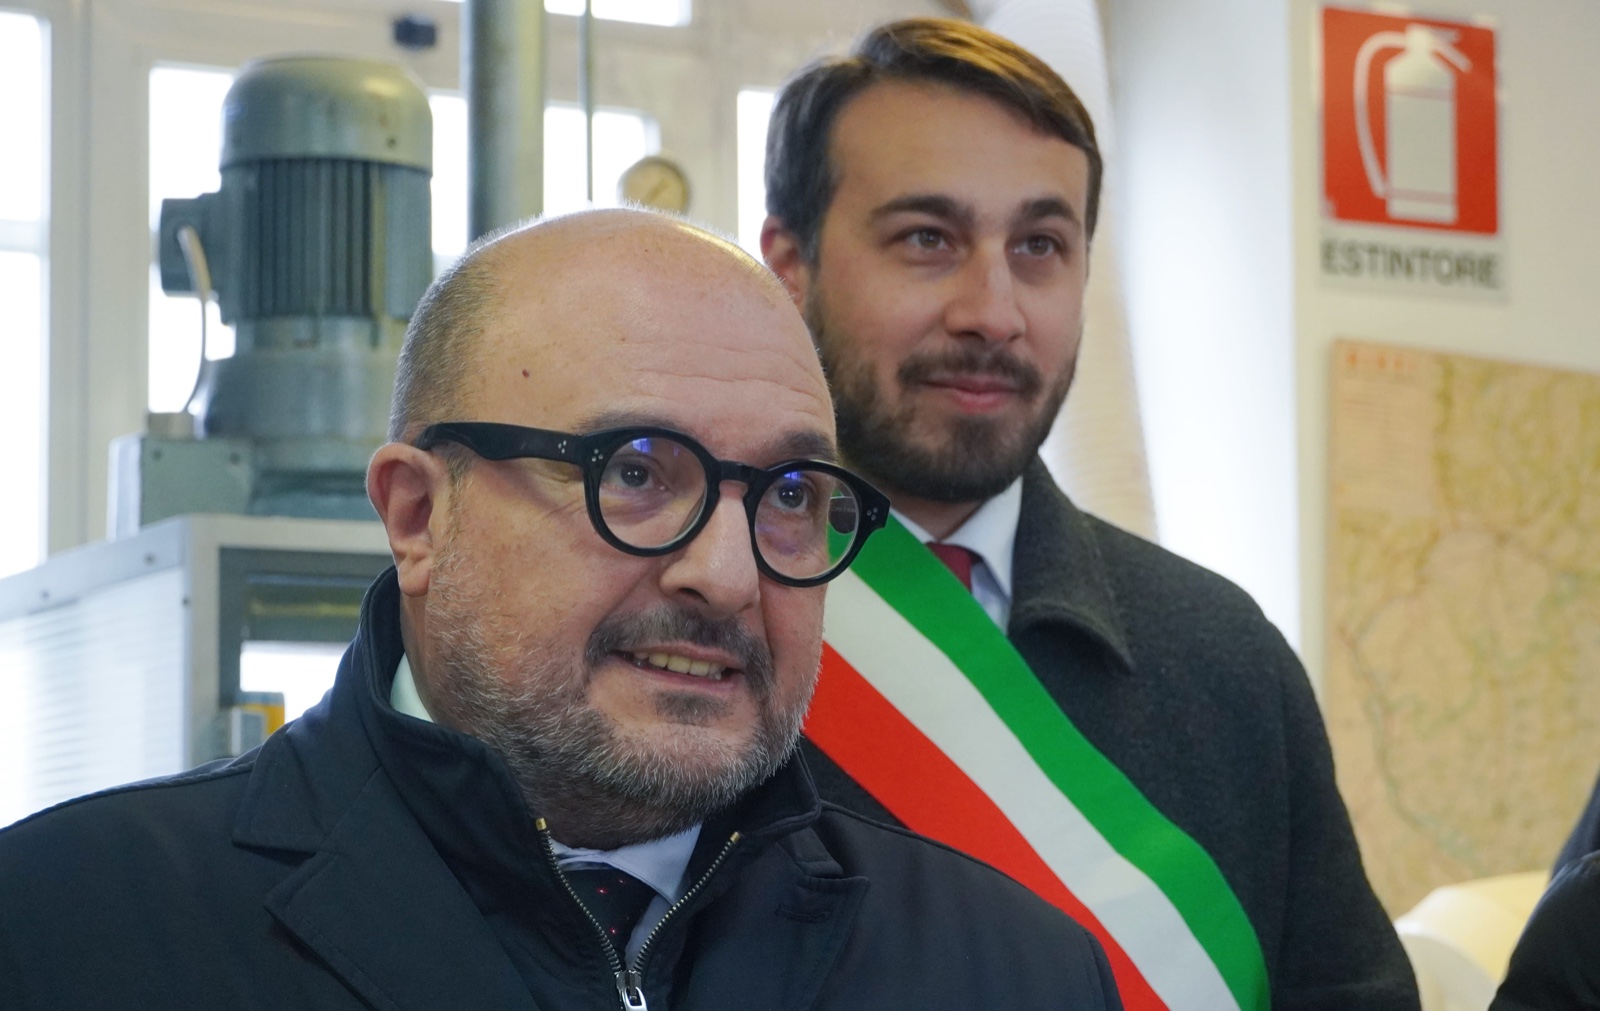 L’ex Banca d’Italia diventerà la sede dell’Archivio di Stato di Rieti, oggi la firma alla presenza del Ministro Sangiuliano